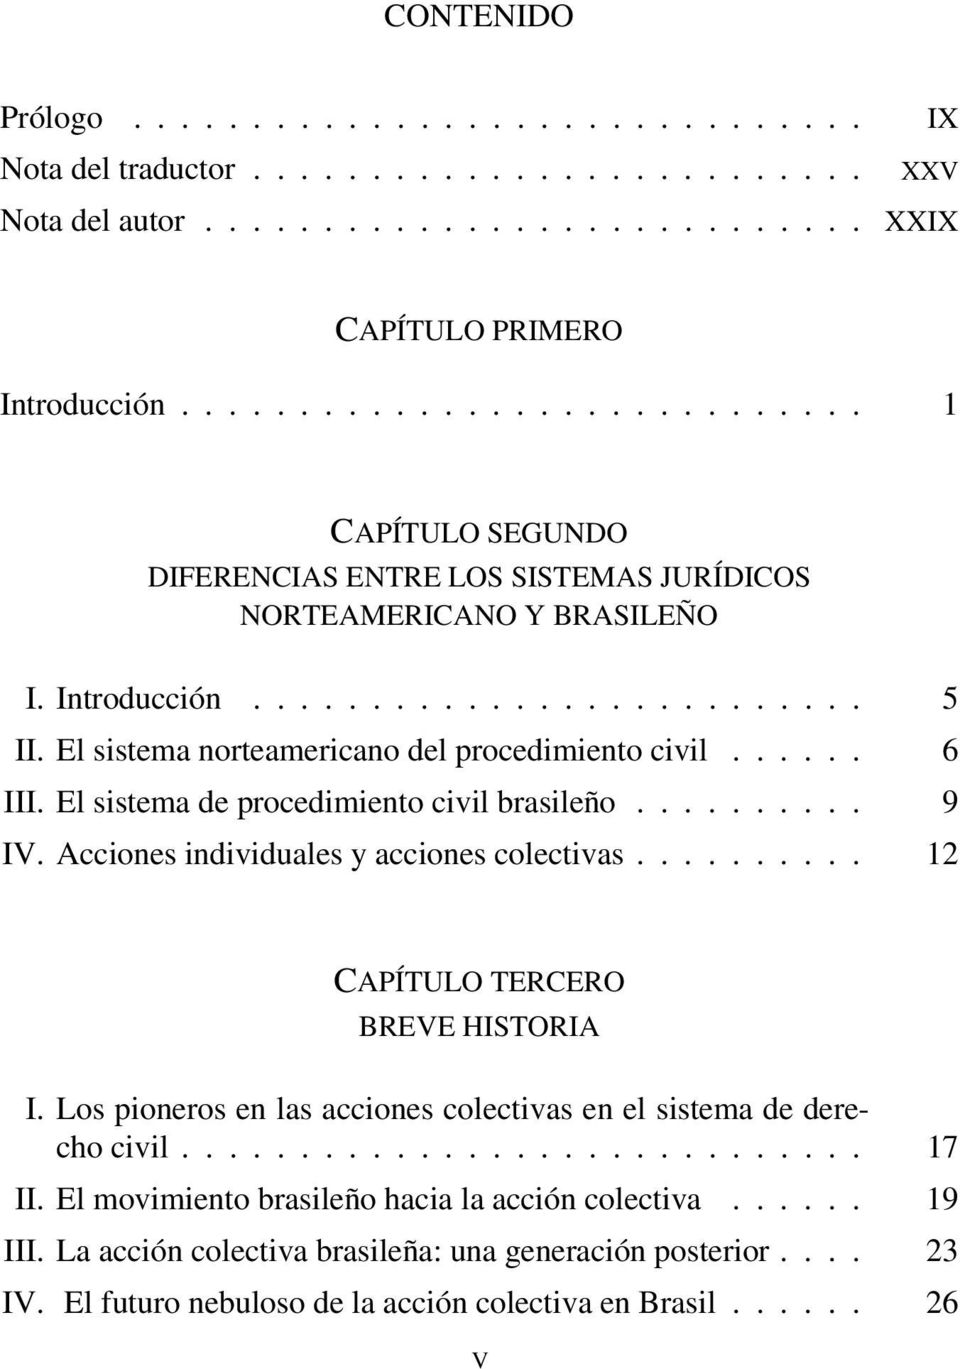 El sistema norteamericano del procedimiento civil...... 6 III. El sistema de procedimiento civil brasileño.......... 9 IV. Acciones individuales y acciones colectivas.